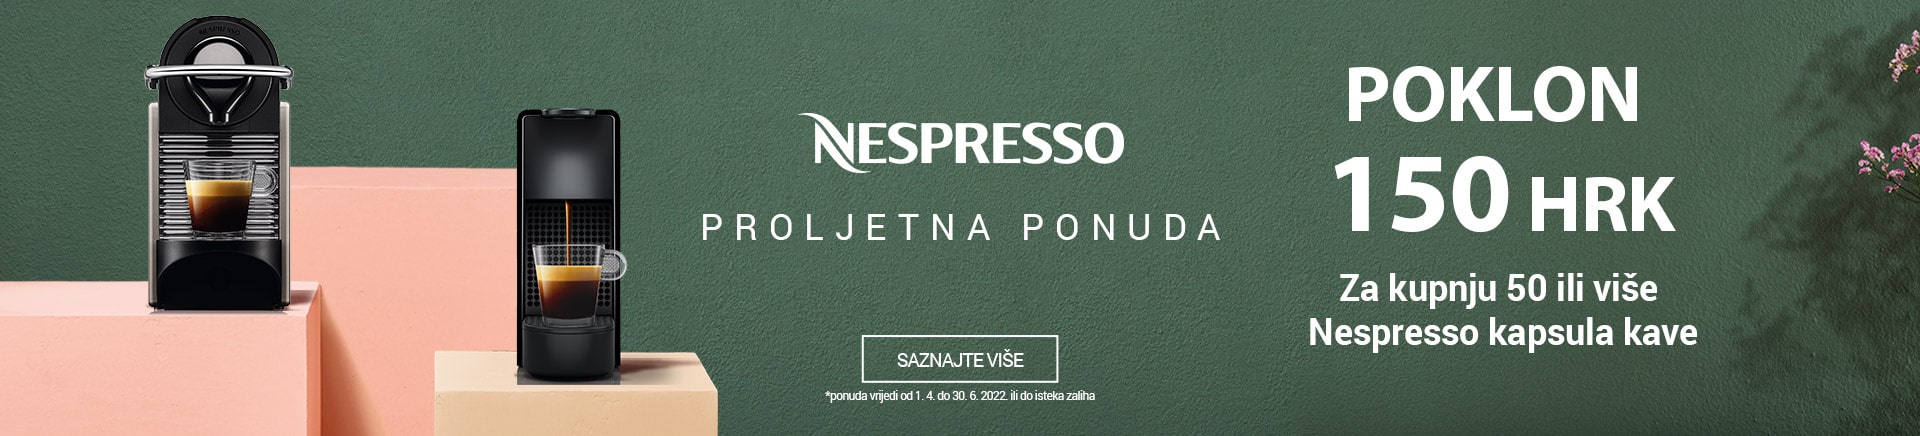 Nespresso proljetna ponuda poklon 150 HRK